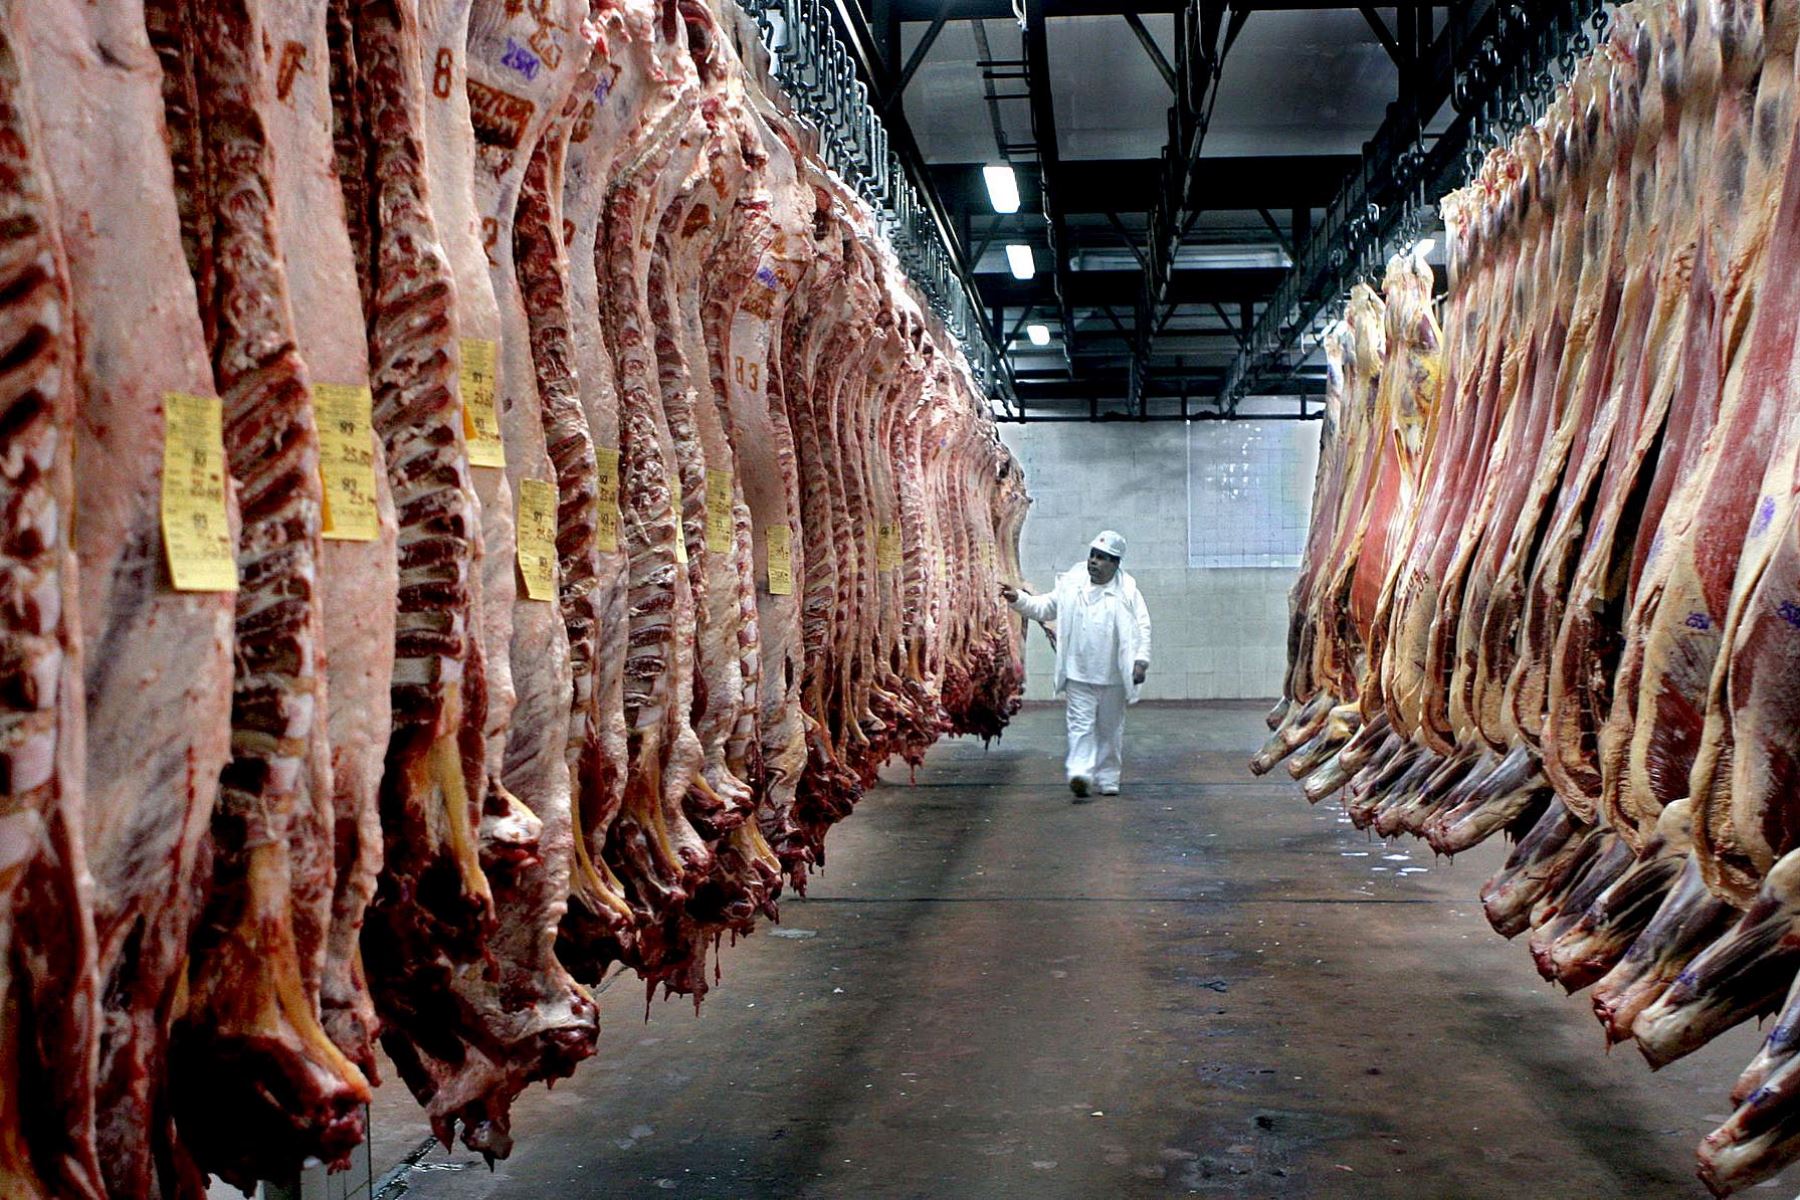 Argentina, cuarto exportador mundial de carne bovina con 819,000 toneladas en 2020, anunció el lunes la suspensión que aplicará por 30 días. Foto: Internet